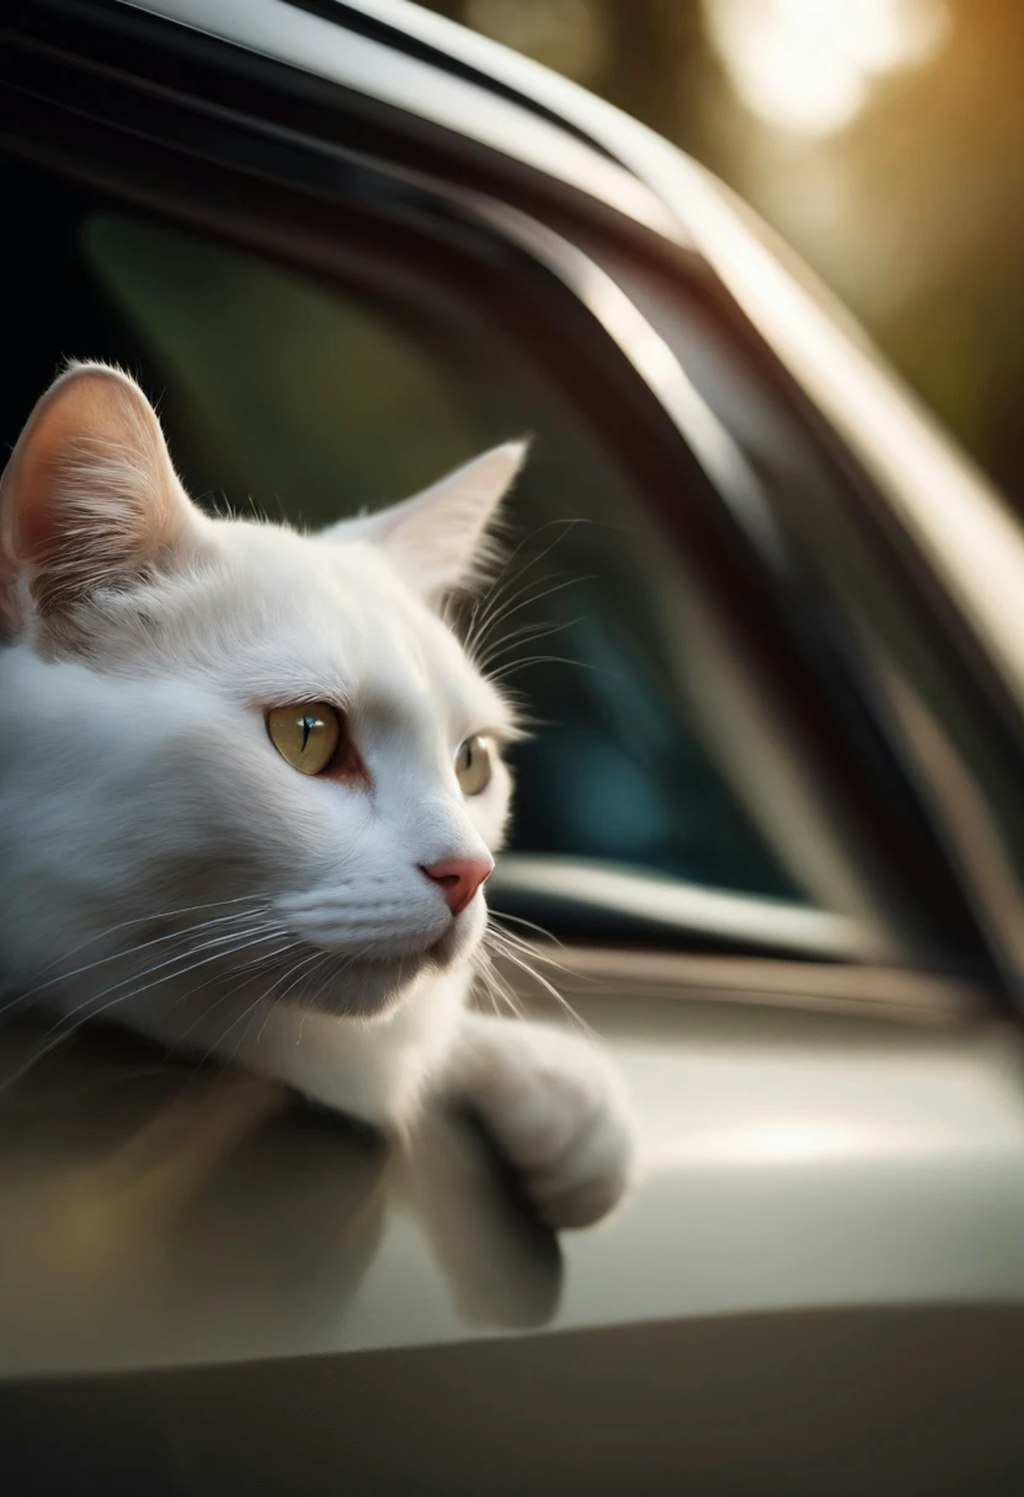 車の窓から白猫